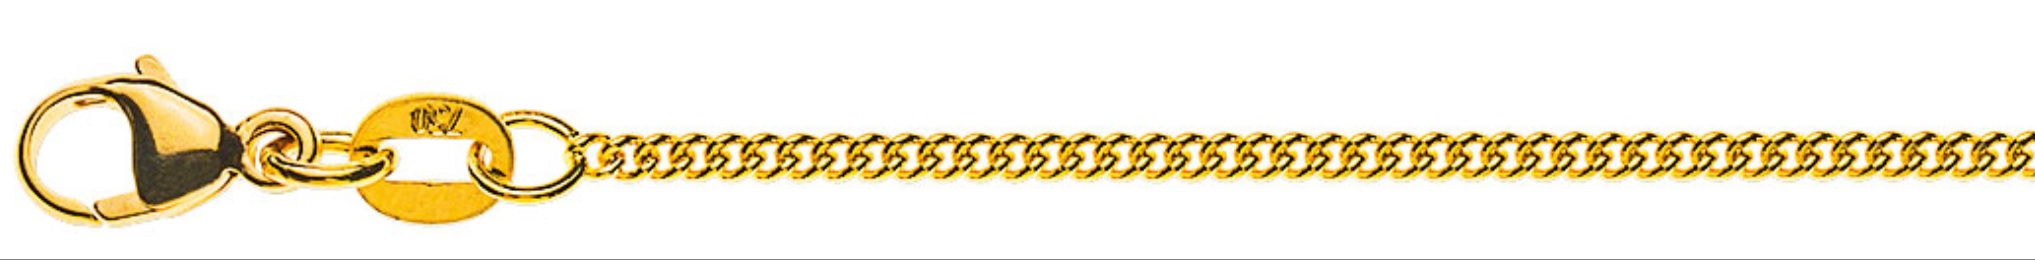 AURONOS Prestige Collier en or jaune 18K chaîne blindée ronde 42cm 1.6mm